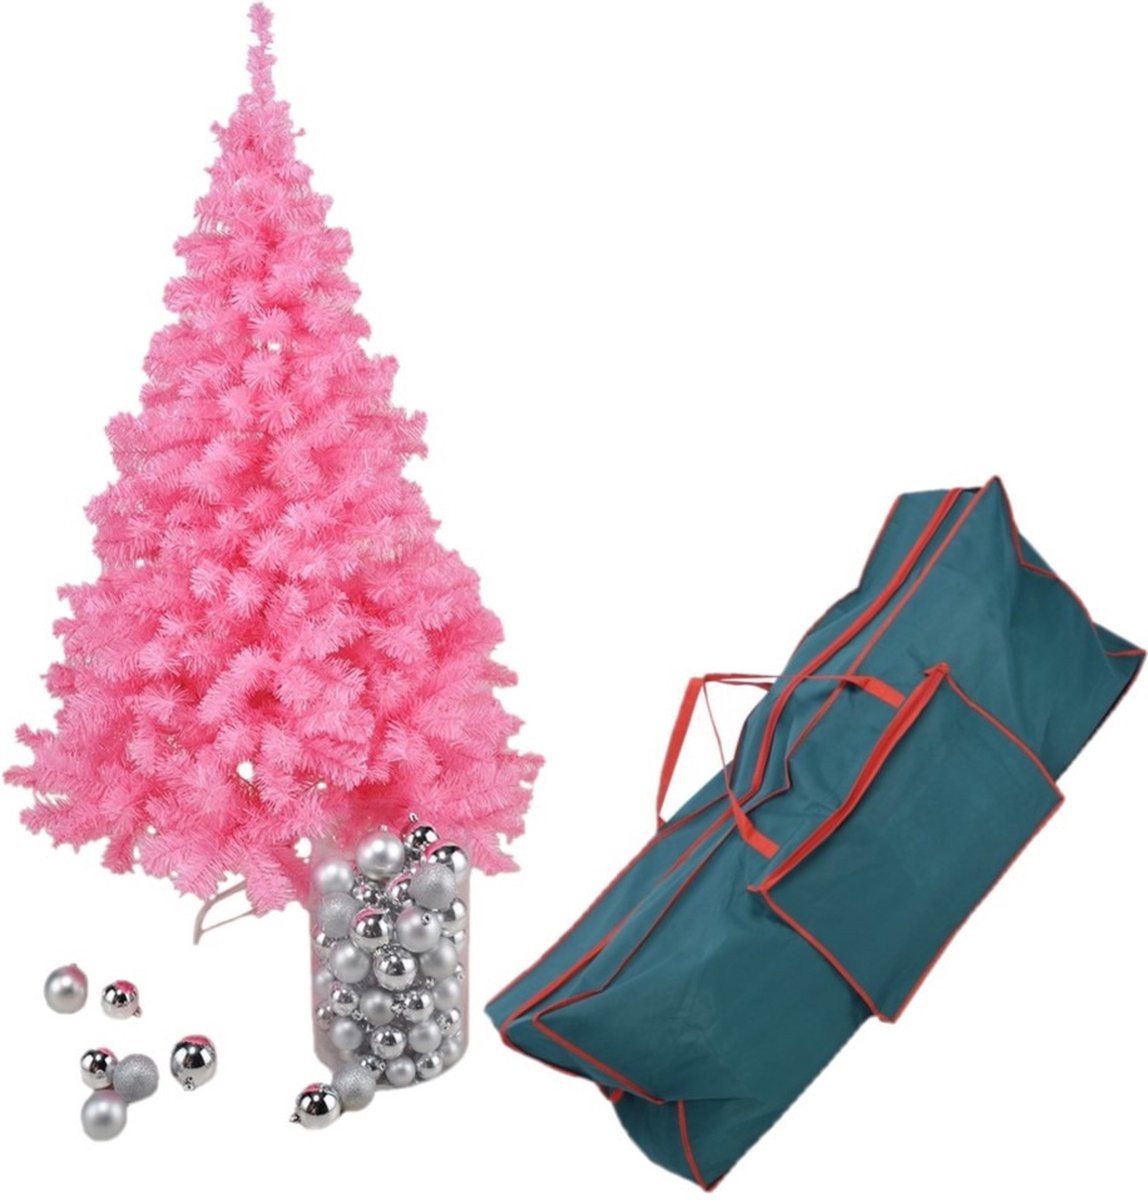 Roze kunst kerstboom/kunstboom 150 cm inclusief opbergzak - Kunstbomen/kunst kerstbomen